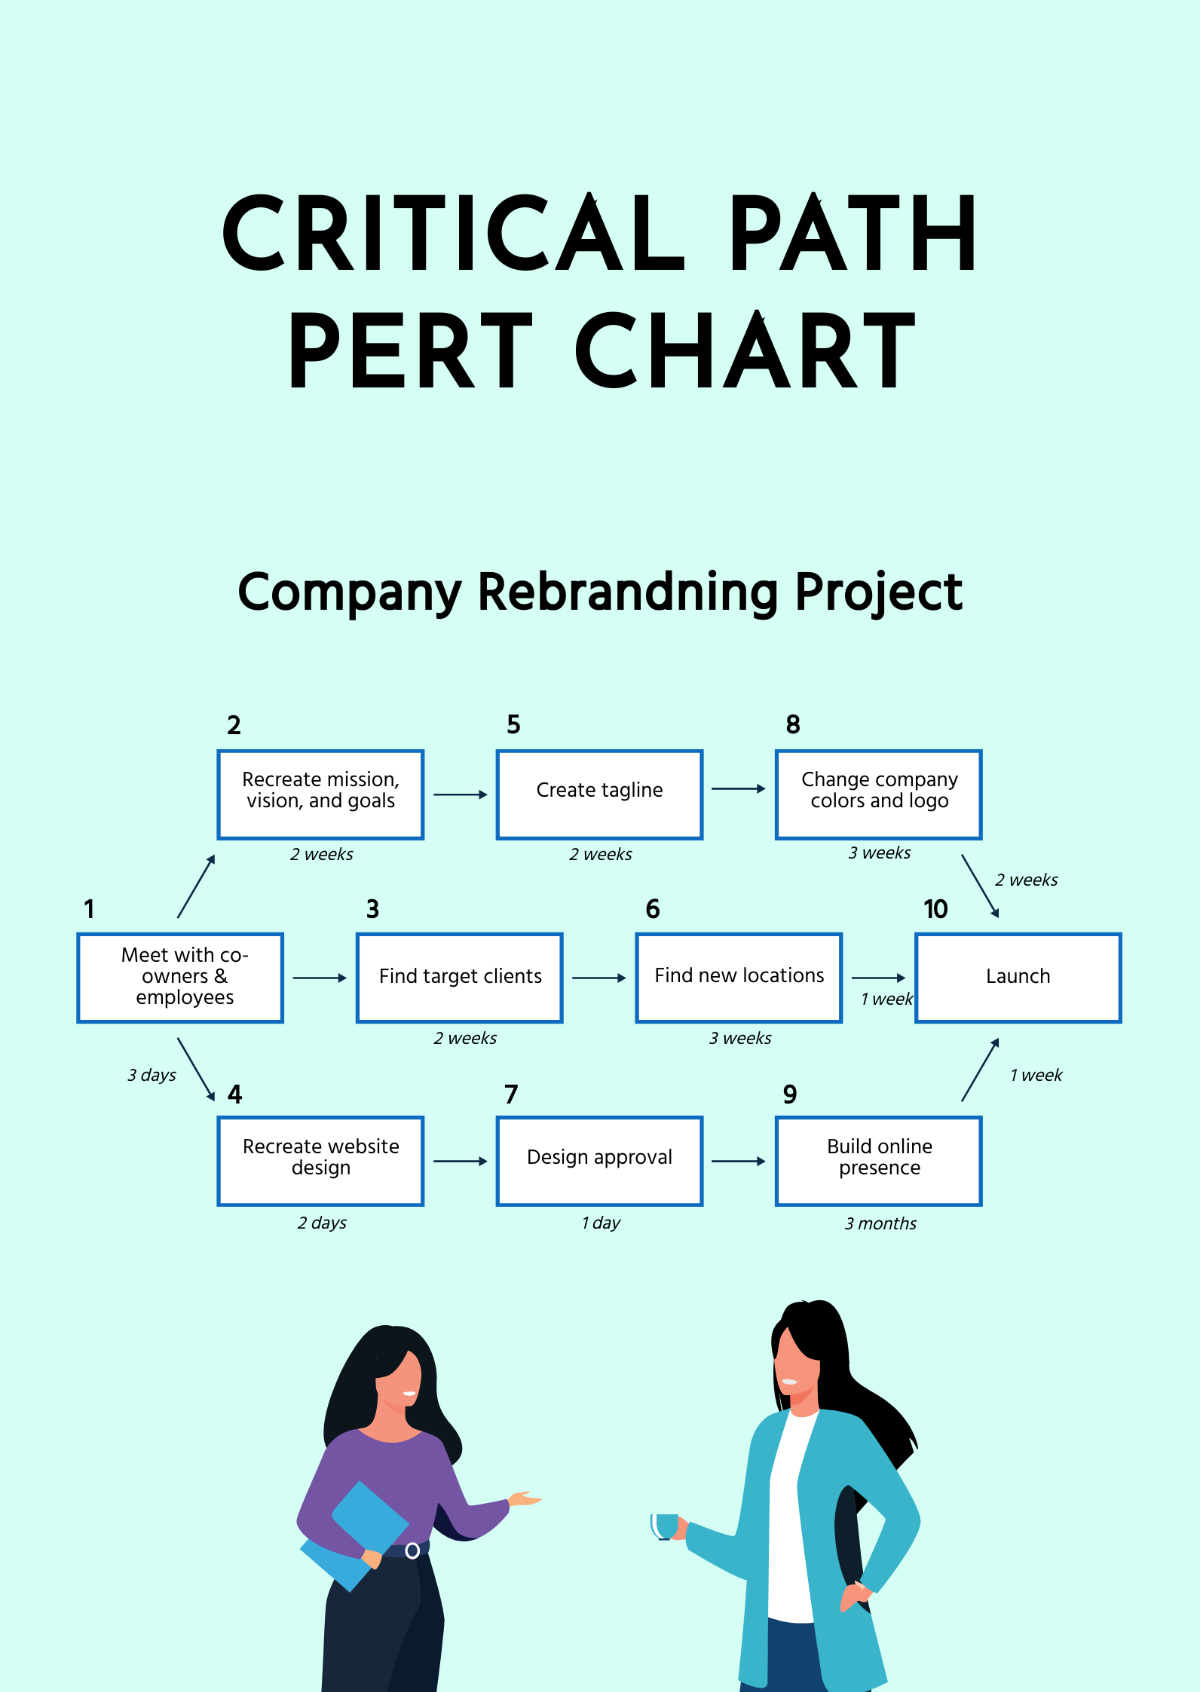 Critical Path PERT Chart Template